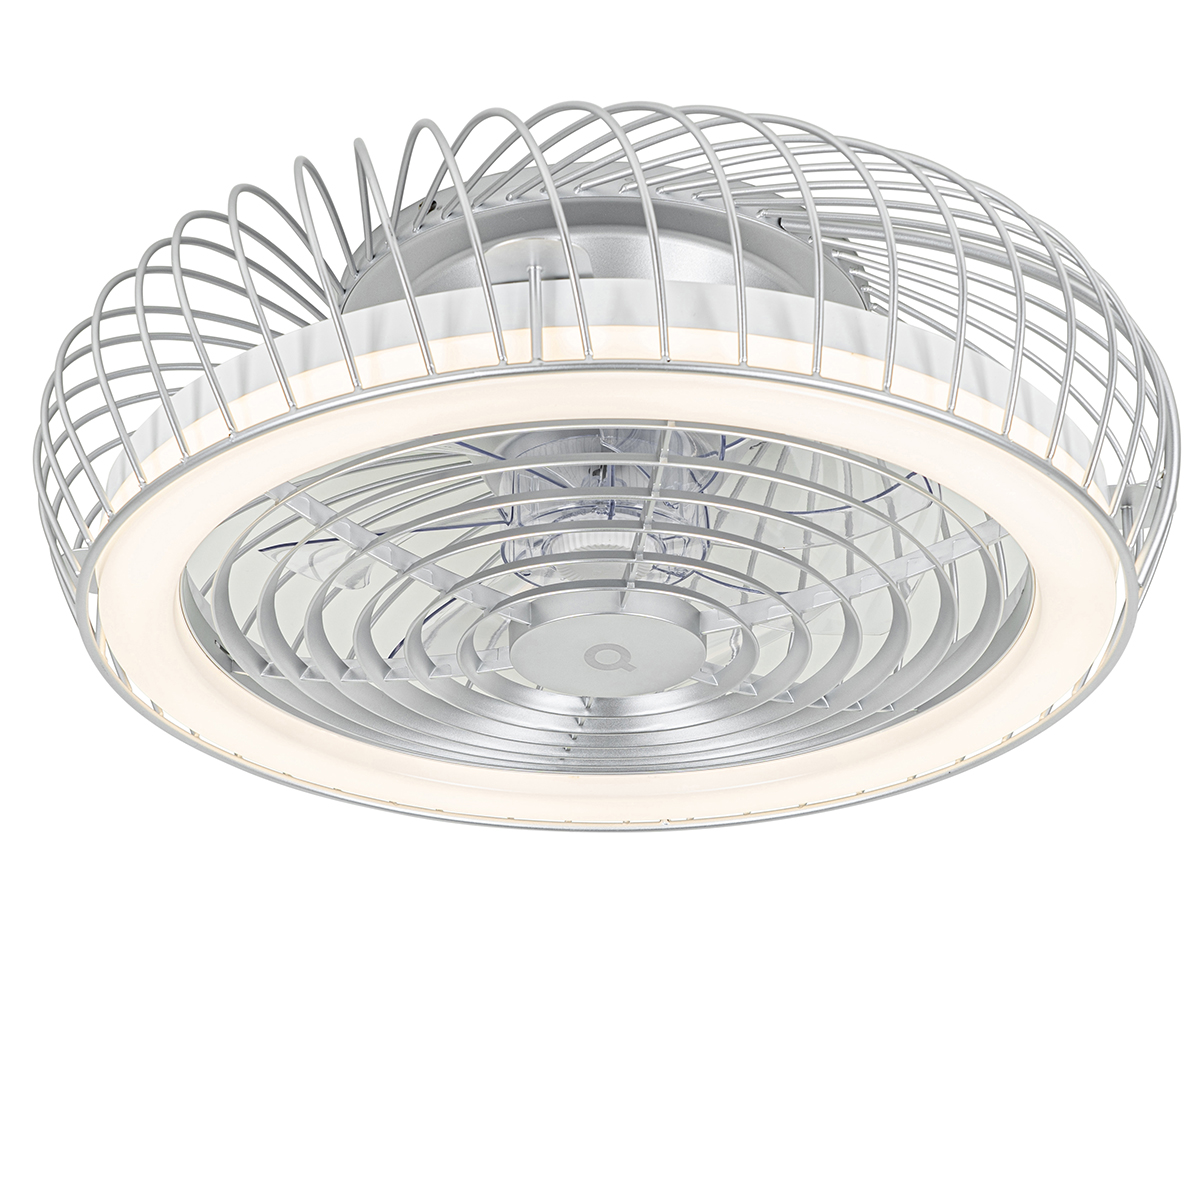 Image of Ventilatore da soffitto intelligente argento con LED e telecomando - Crowe